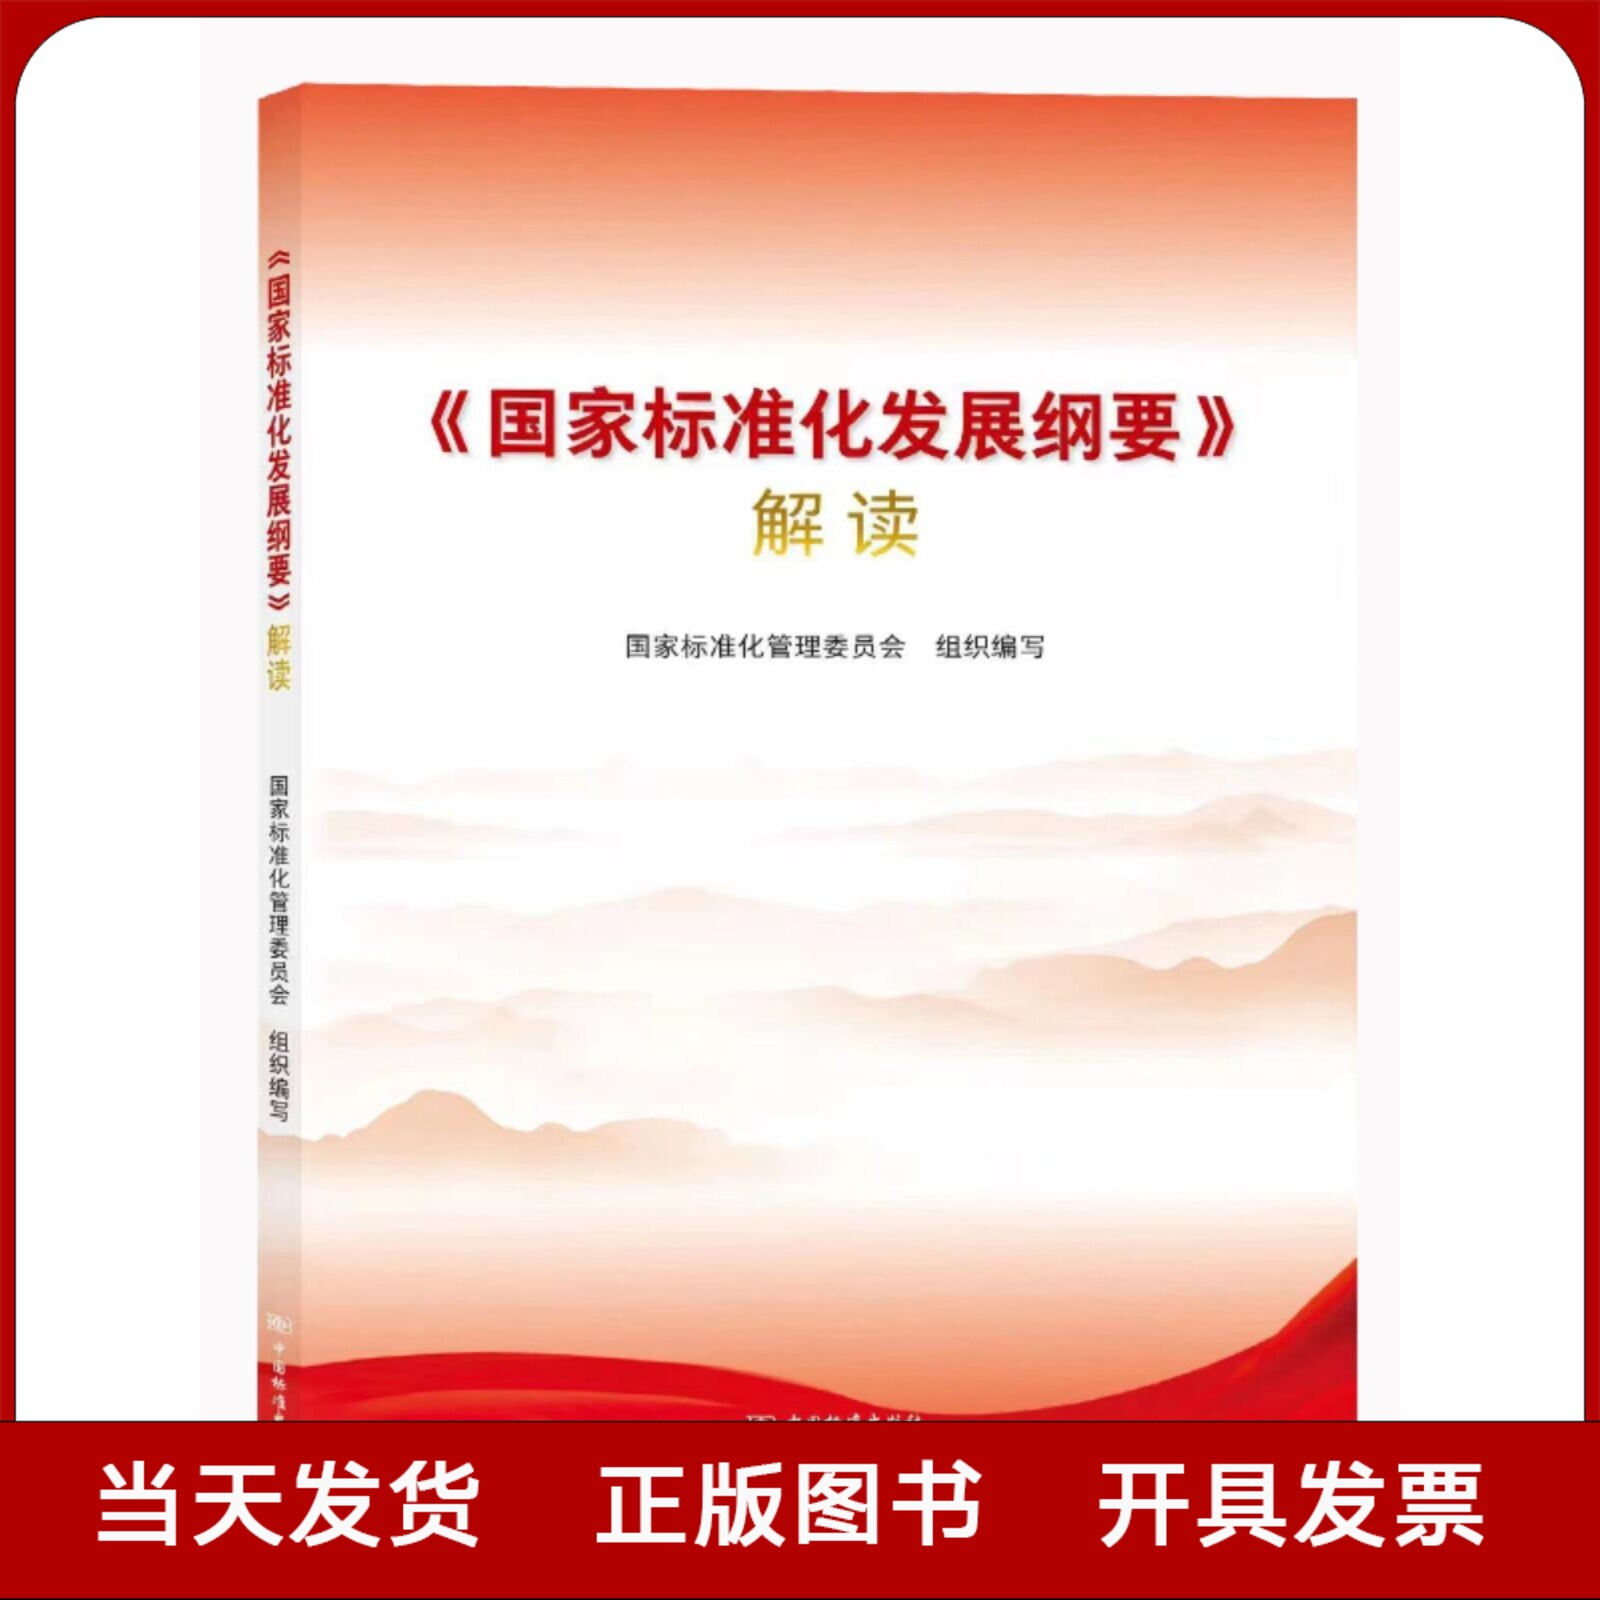 全新正版 《国家标准化发展纲要》解读 国家标准化管理委员会 编写 中国标准出版社